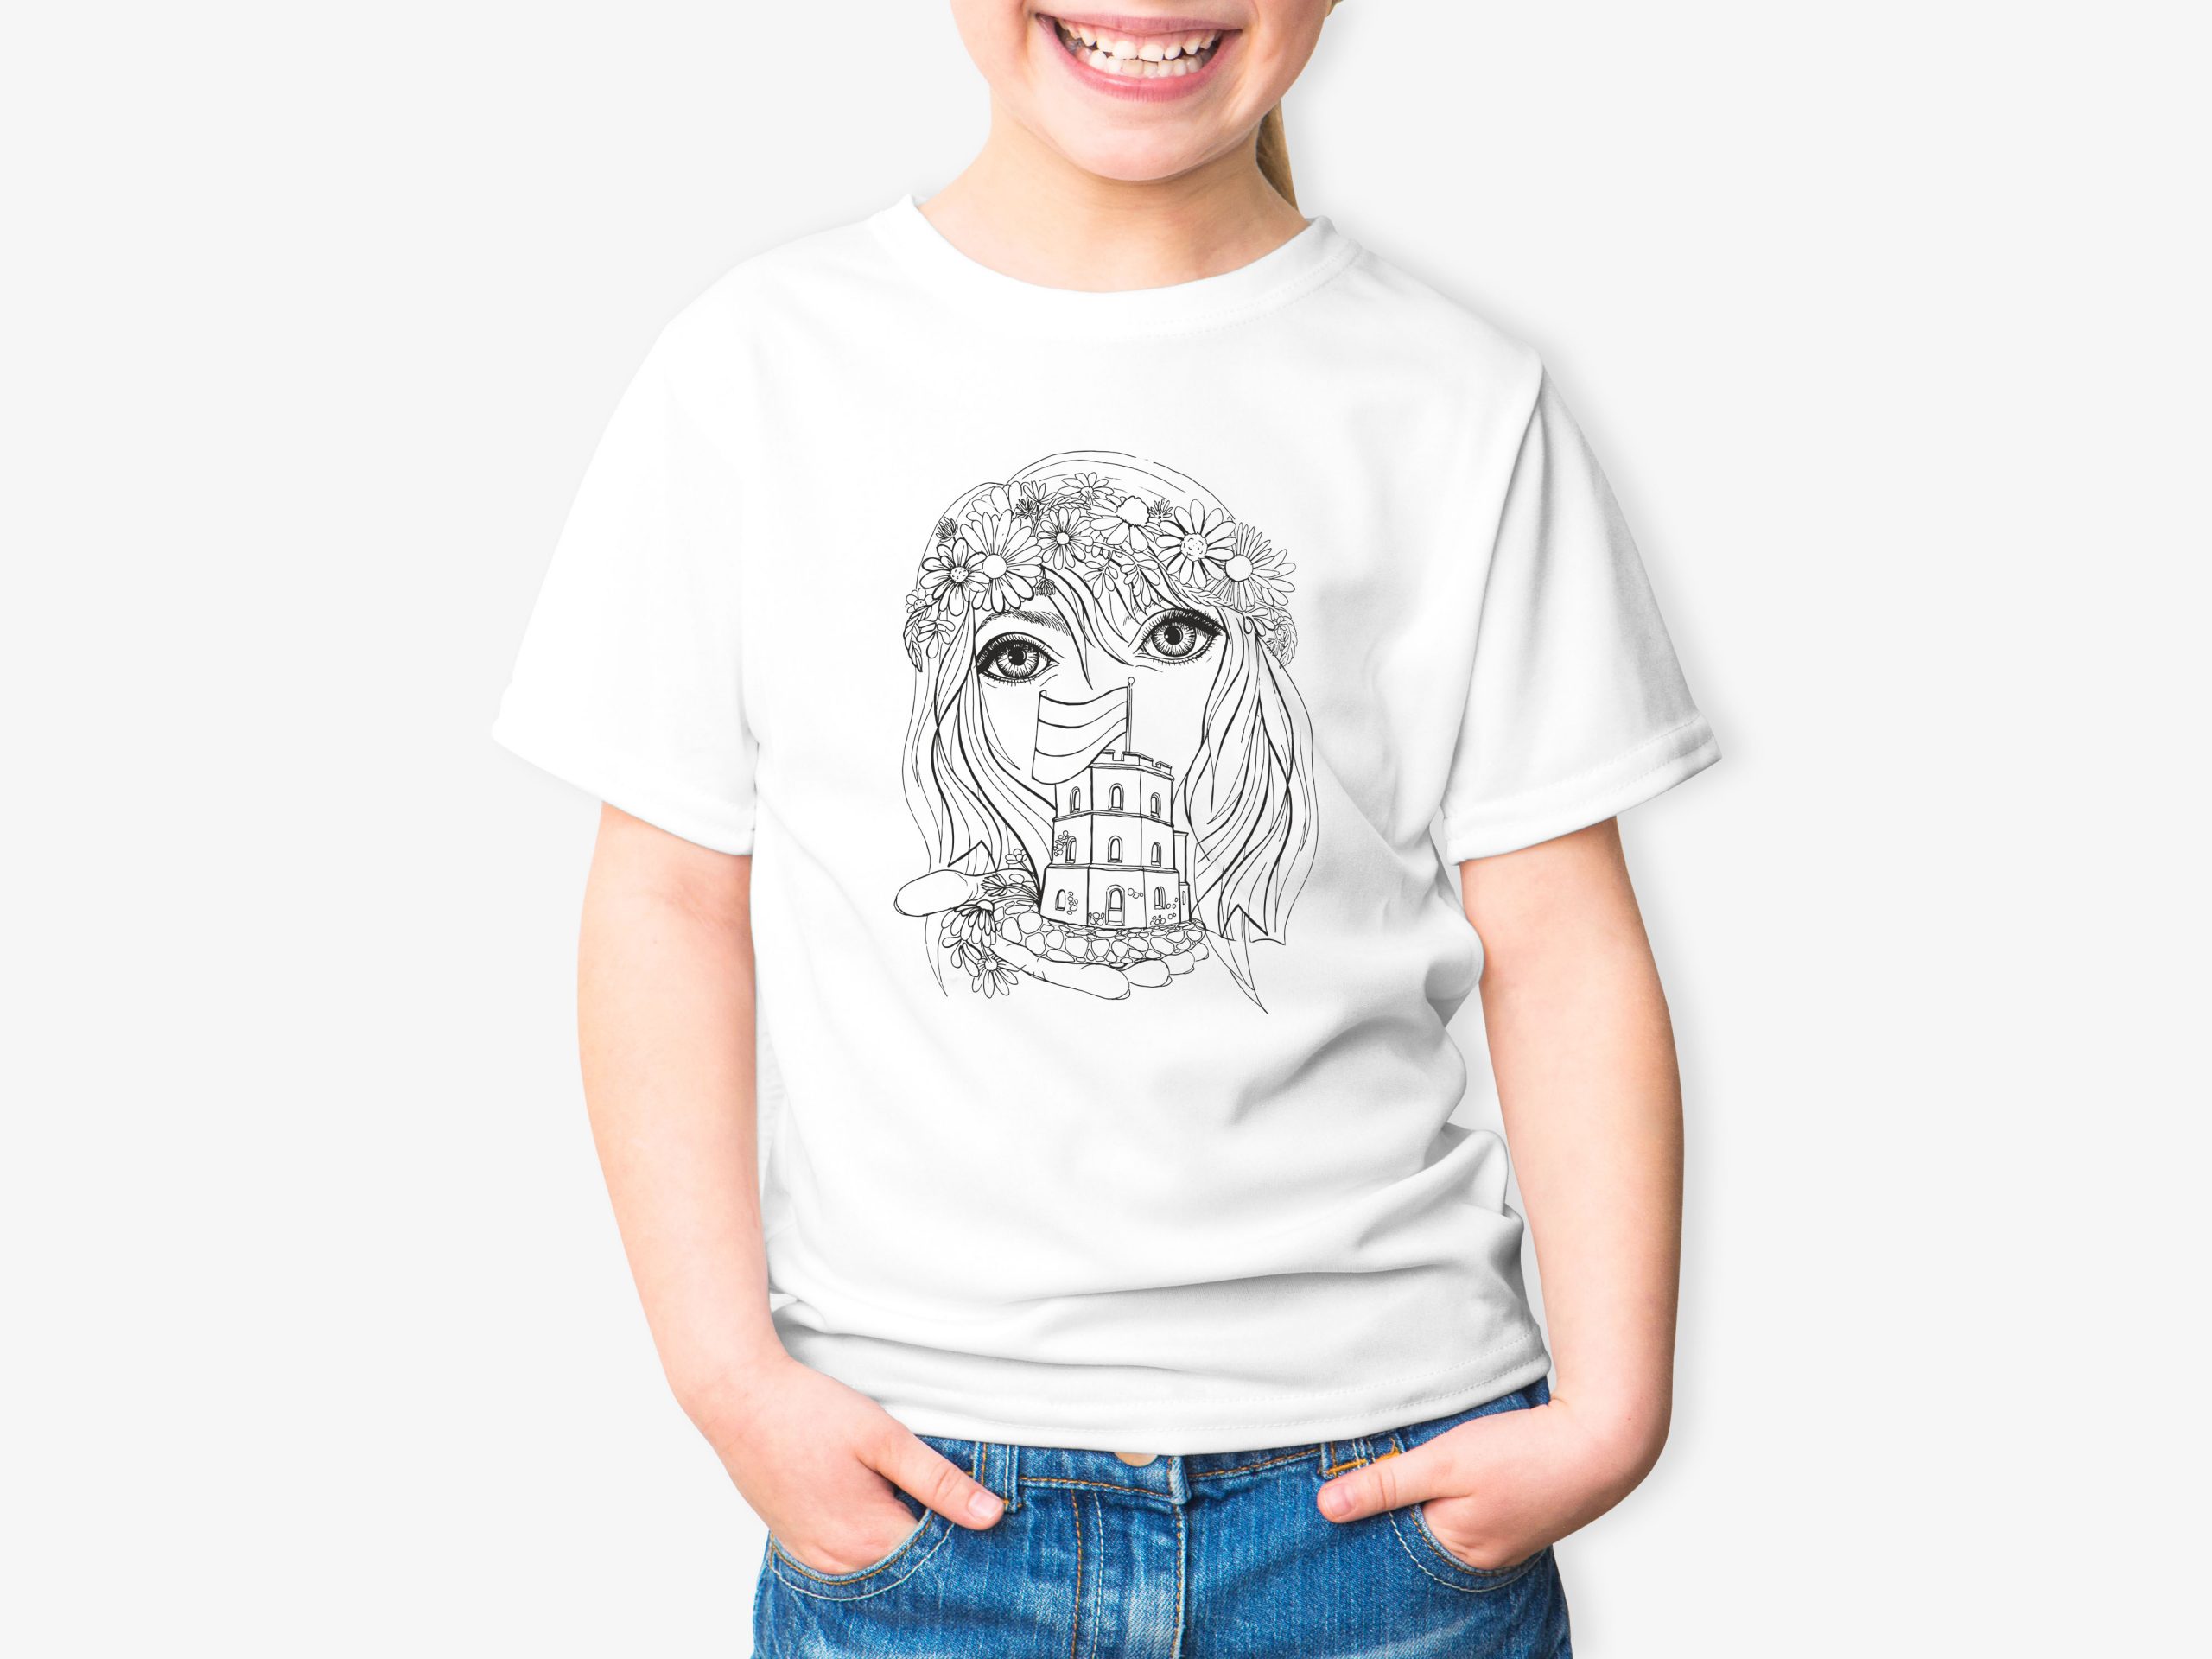 Spalvinimo marškinėliai "Mergaitė&Gedimino pilis"